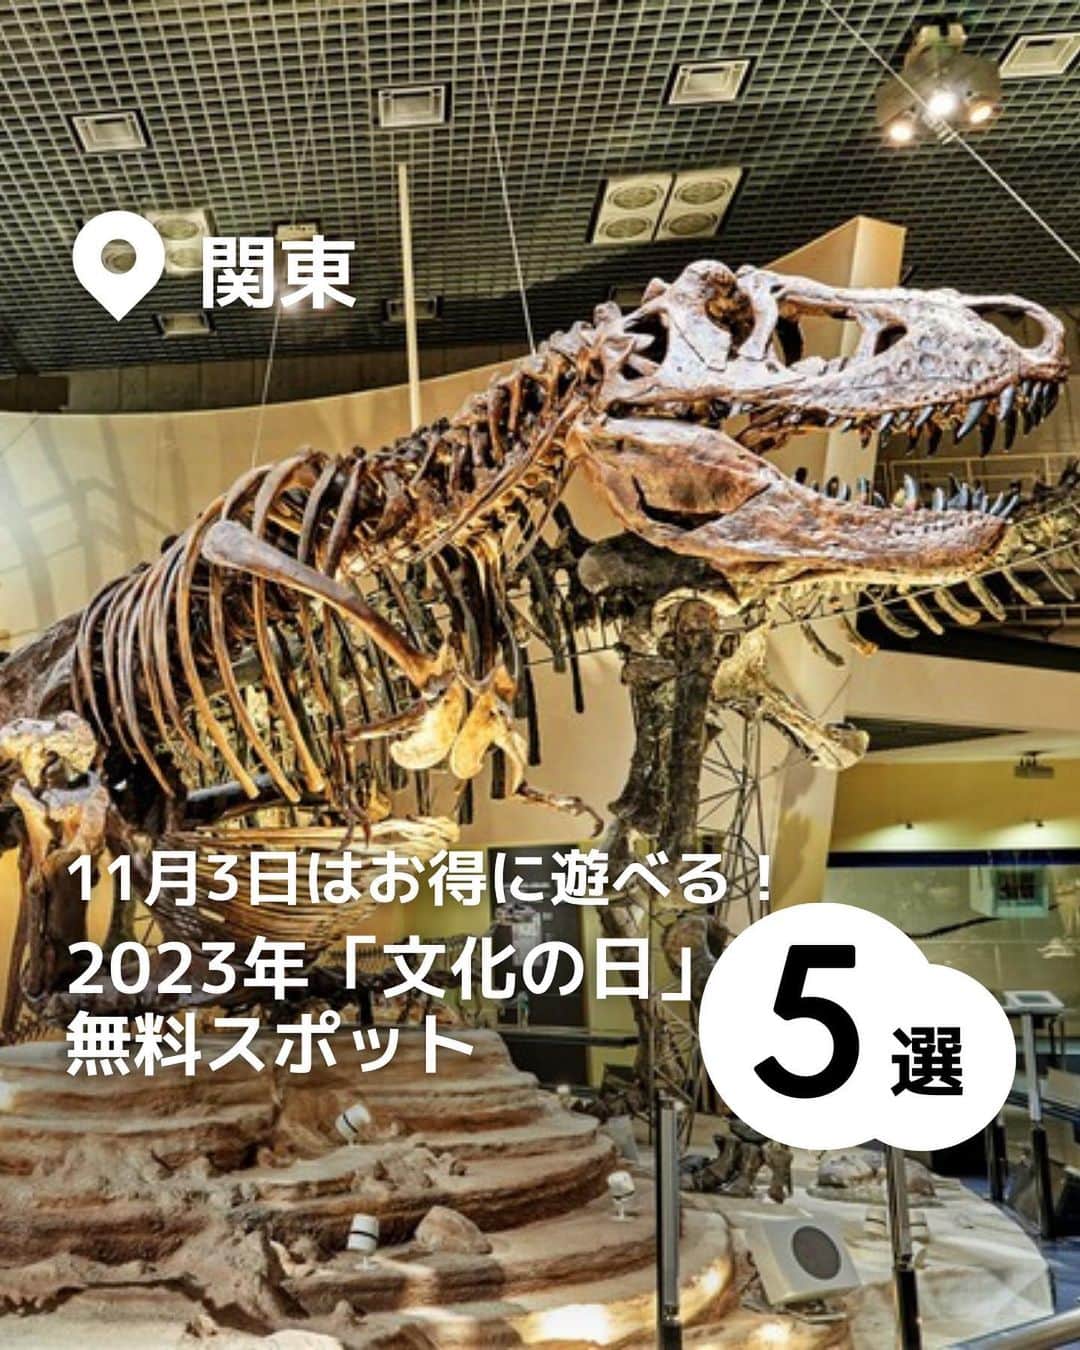 iko-yo（いこーよオフィシャル）のインスタグラム：「今回「11月3日はお得に遊べる2023年文化の日無料スポット」をピックアップ！ @ikoyo_odekake に他の投稿も！ ーーーーーーーーーーーーーーーーーーー 📍東京都台東区 【 #国立科学博物館 】 @kahaku_nmns  日本で唯一の国立総合科学博物館です。自然や科学などについて幅広く学べる同館では、化石や動物のはく製、恐竜の全身骨格の展示などを見ることができます。また、世界初の全球型映像施設「シアター36○」も必見！ 2023年の文化の日は、通常、大人・大学生630円の常設展入館料が無料になります（高校生以下および18歳未満、65歳以上は常時無料）。  📍東京都港区 【 #国立科学博物館附属自然教育園 】 武蔵野の森をできる限り本来の姿のまま残したスポットで、都心にいながら植物や生物など豊かな自然にふれられます。毎月さまざまなイベントが開催されており、楽しみながら自然について学べるプログラムを行う「子ども自然教室」が人気です。 2023年の文化の日は、通常、大人・大学生320円の入園料が無料になります（高校生以下および65歳以上は常時無料）。  📍東京都文京区 【 #印刷博物館 】 @printingmuseumtokyo  本や新聞などの印刷技術や印刷についての文化を学べるスポットです。ポスターや書籍など、さまざまなコレクションが展示されており、生活における印刷の役割を発見することができます。 2023年の文化の日は、通常は大人400円、学生200円、高校生100円の入場料が無料になります（中学生以下および70歳以上は常時無料）。  📍東京都千代田区 【 #東京国立近代美術館 】 @momat_museum  明治時代後半以降の近現代の美術作品を多数展示しています。豊富なコレクションがそろう所蔵作品展のほかに、企画展も年に数回楽しめます。 2023年の文化の日は、厳選された作品が一度に見られる所蔵作品展「MOMATコレクション」が、通常は大人500円、大学生250円のところ、無料で鑑賞できます（高校生以下および18歳未満、65歳以上は常時無料）。  📍 埼玉県比企郡滑川町 【 #国営武蔵丘陵森林公園 】 @shinrinkoen  日本一大きなエアートランポリン「ぽんぽこマウンテン」をはじめ、家族で楽しめる遊具が盛りだくさん！ 小学生以下が対象の「むさしキッズドーム」には、約50種類ものカラフルな遊具があり、ドーム内では雨の日も安心して遊べます。森の中のアスレチックには、子供から大人まで楽しめる遊具が24種類もありますよ。 2023年の文化の日当日は通常どおりですが、11月4日（土）に、通常は高校生以上450円、65歳以上210円の入園料が無料になります（中学生以下は常時無料）。  ※2023年10月17日時点の情報です。 最新の情報は公式HPや「いこーよ」サイトでご確認ください。 ーーーーーーーーーーーーーーーーーーー おでかけ情報量は日本最大級！ 子どもとお出かけ情報サイト「いこーよ」 「親子でおでかけしたい場所」をご紹介させていただいています！  お子さんとのおでかけの思い出の写真を、このアカウントをフォローの上#いこーよ #いこーよおでかけ部 をつけてぜひ投稿してください。魅力的な写真は、いこーよ公式SNSで紹介させていただきます！  募集中タグ#いこーよ #いこーよおでかけ部  「子どもと行きたい！」と思ったら保存が便利！ プロフィールのURLから「いこーよ」のサイトに行くと、他の投稿やオトクな情報などが載っています♪ ☞ @ikoyo_odekake  #いこーよ #お出かけ #おでかけ #お出かけスポット #子連れ #子連れ旅行#こどものいる暮らし #子連れスポット  #子どもとおでかけ #台東区ママ #台東区観光 #台東区旅行 #文化の日 #文化の日無料スポット #3連休 #博物館デビュー #屋外遊び場」